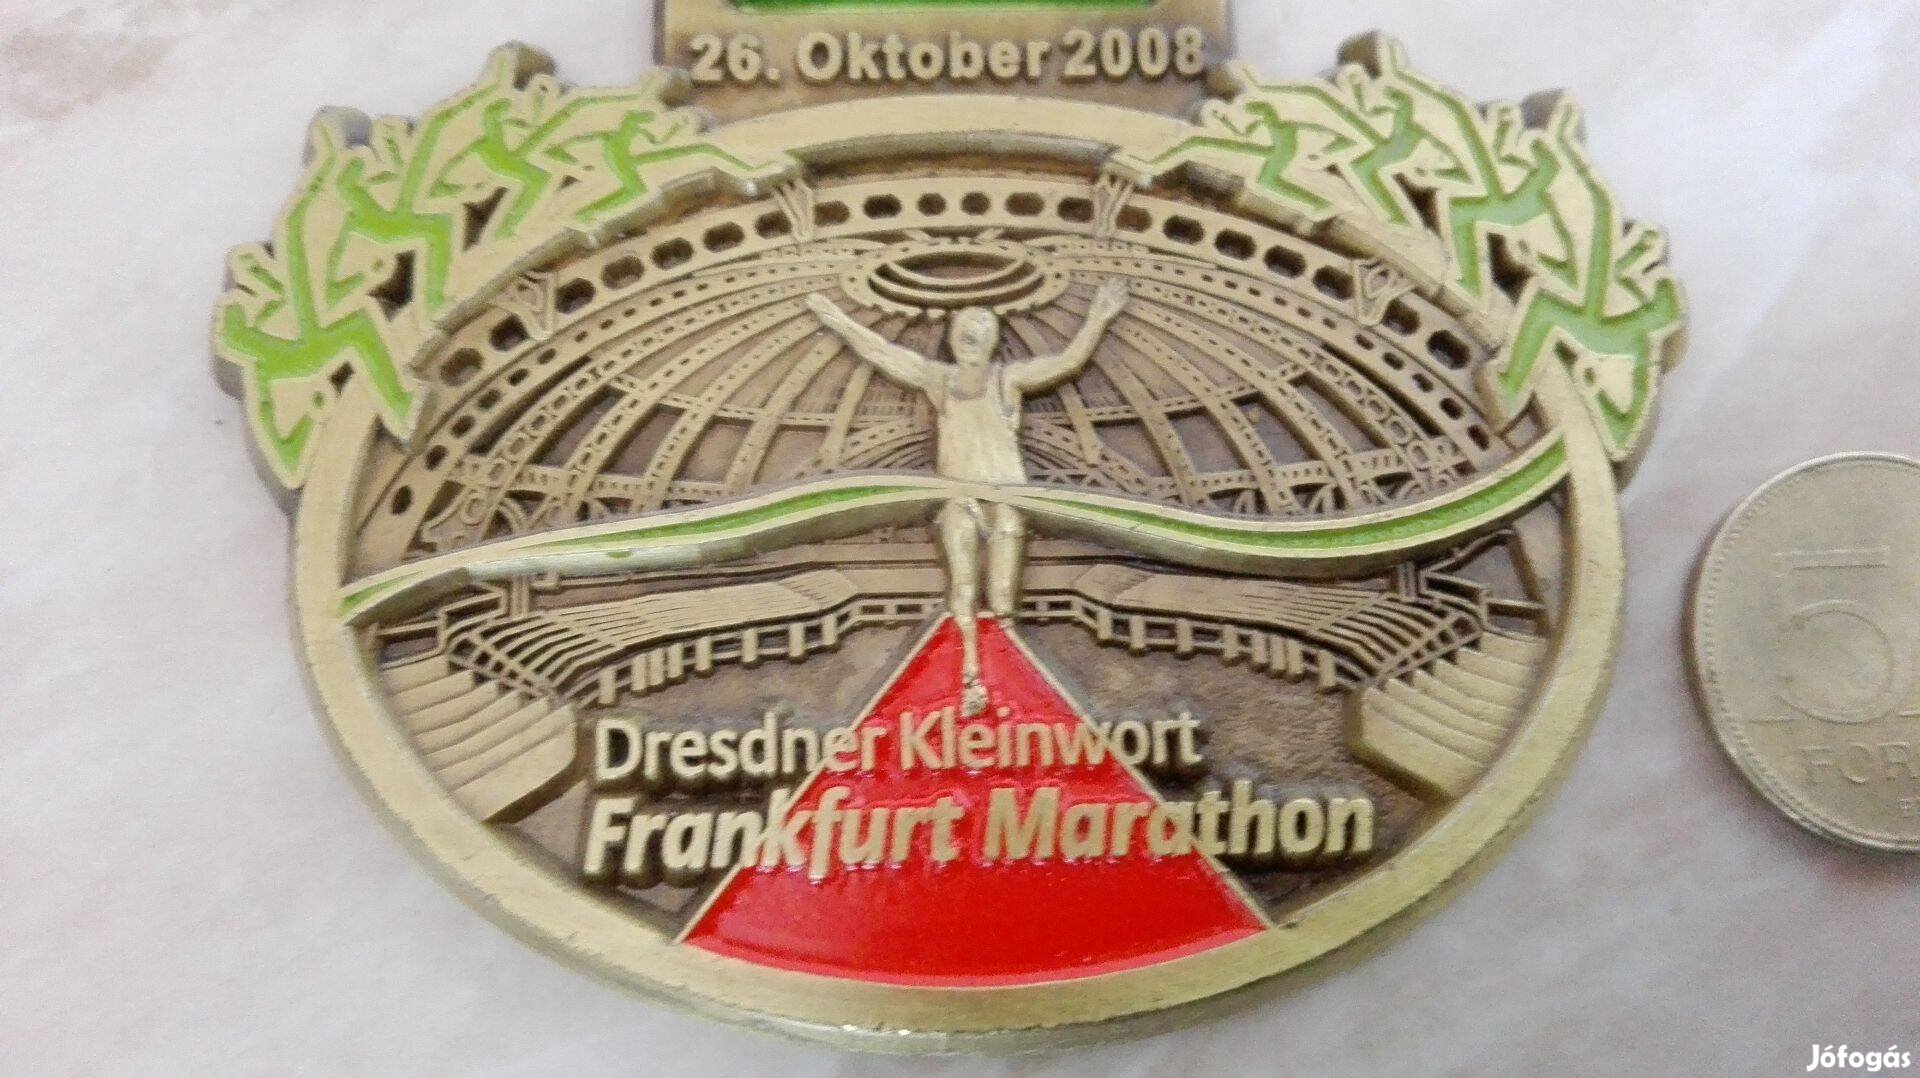 2008-as Frankfurt Maraton érem